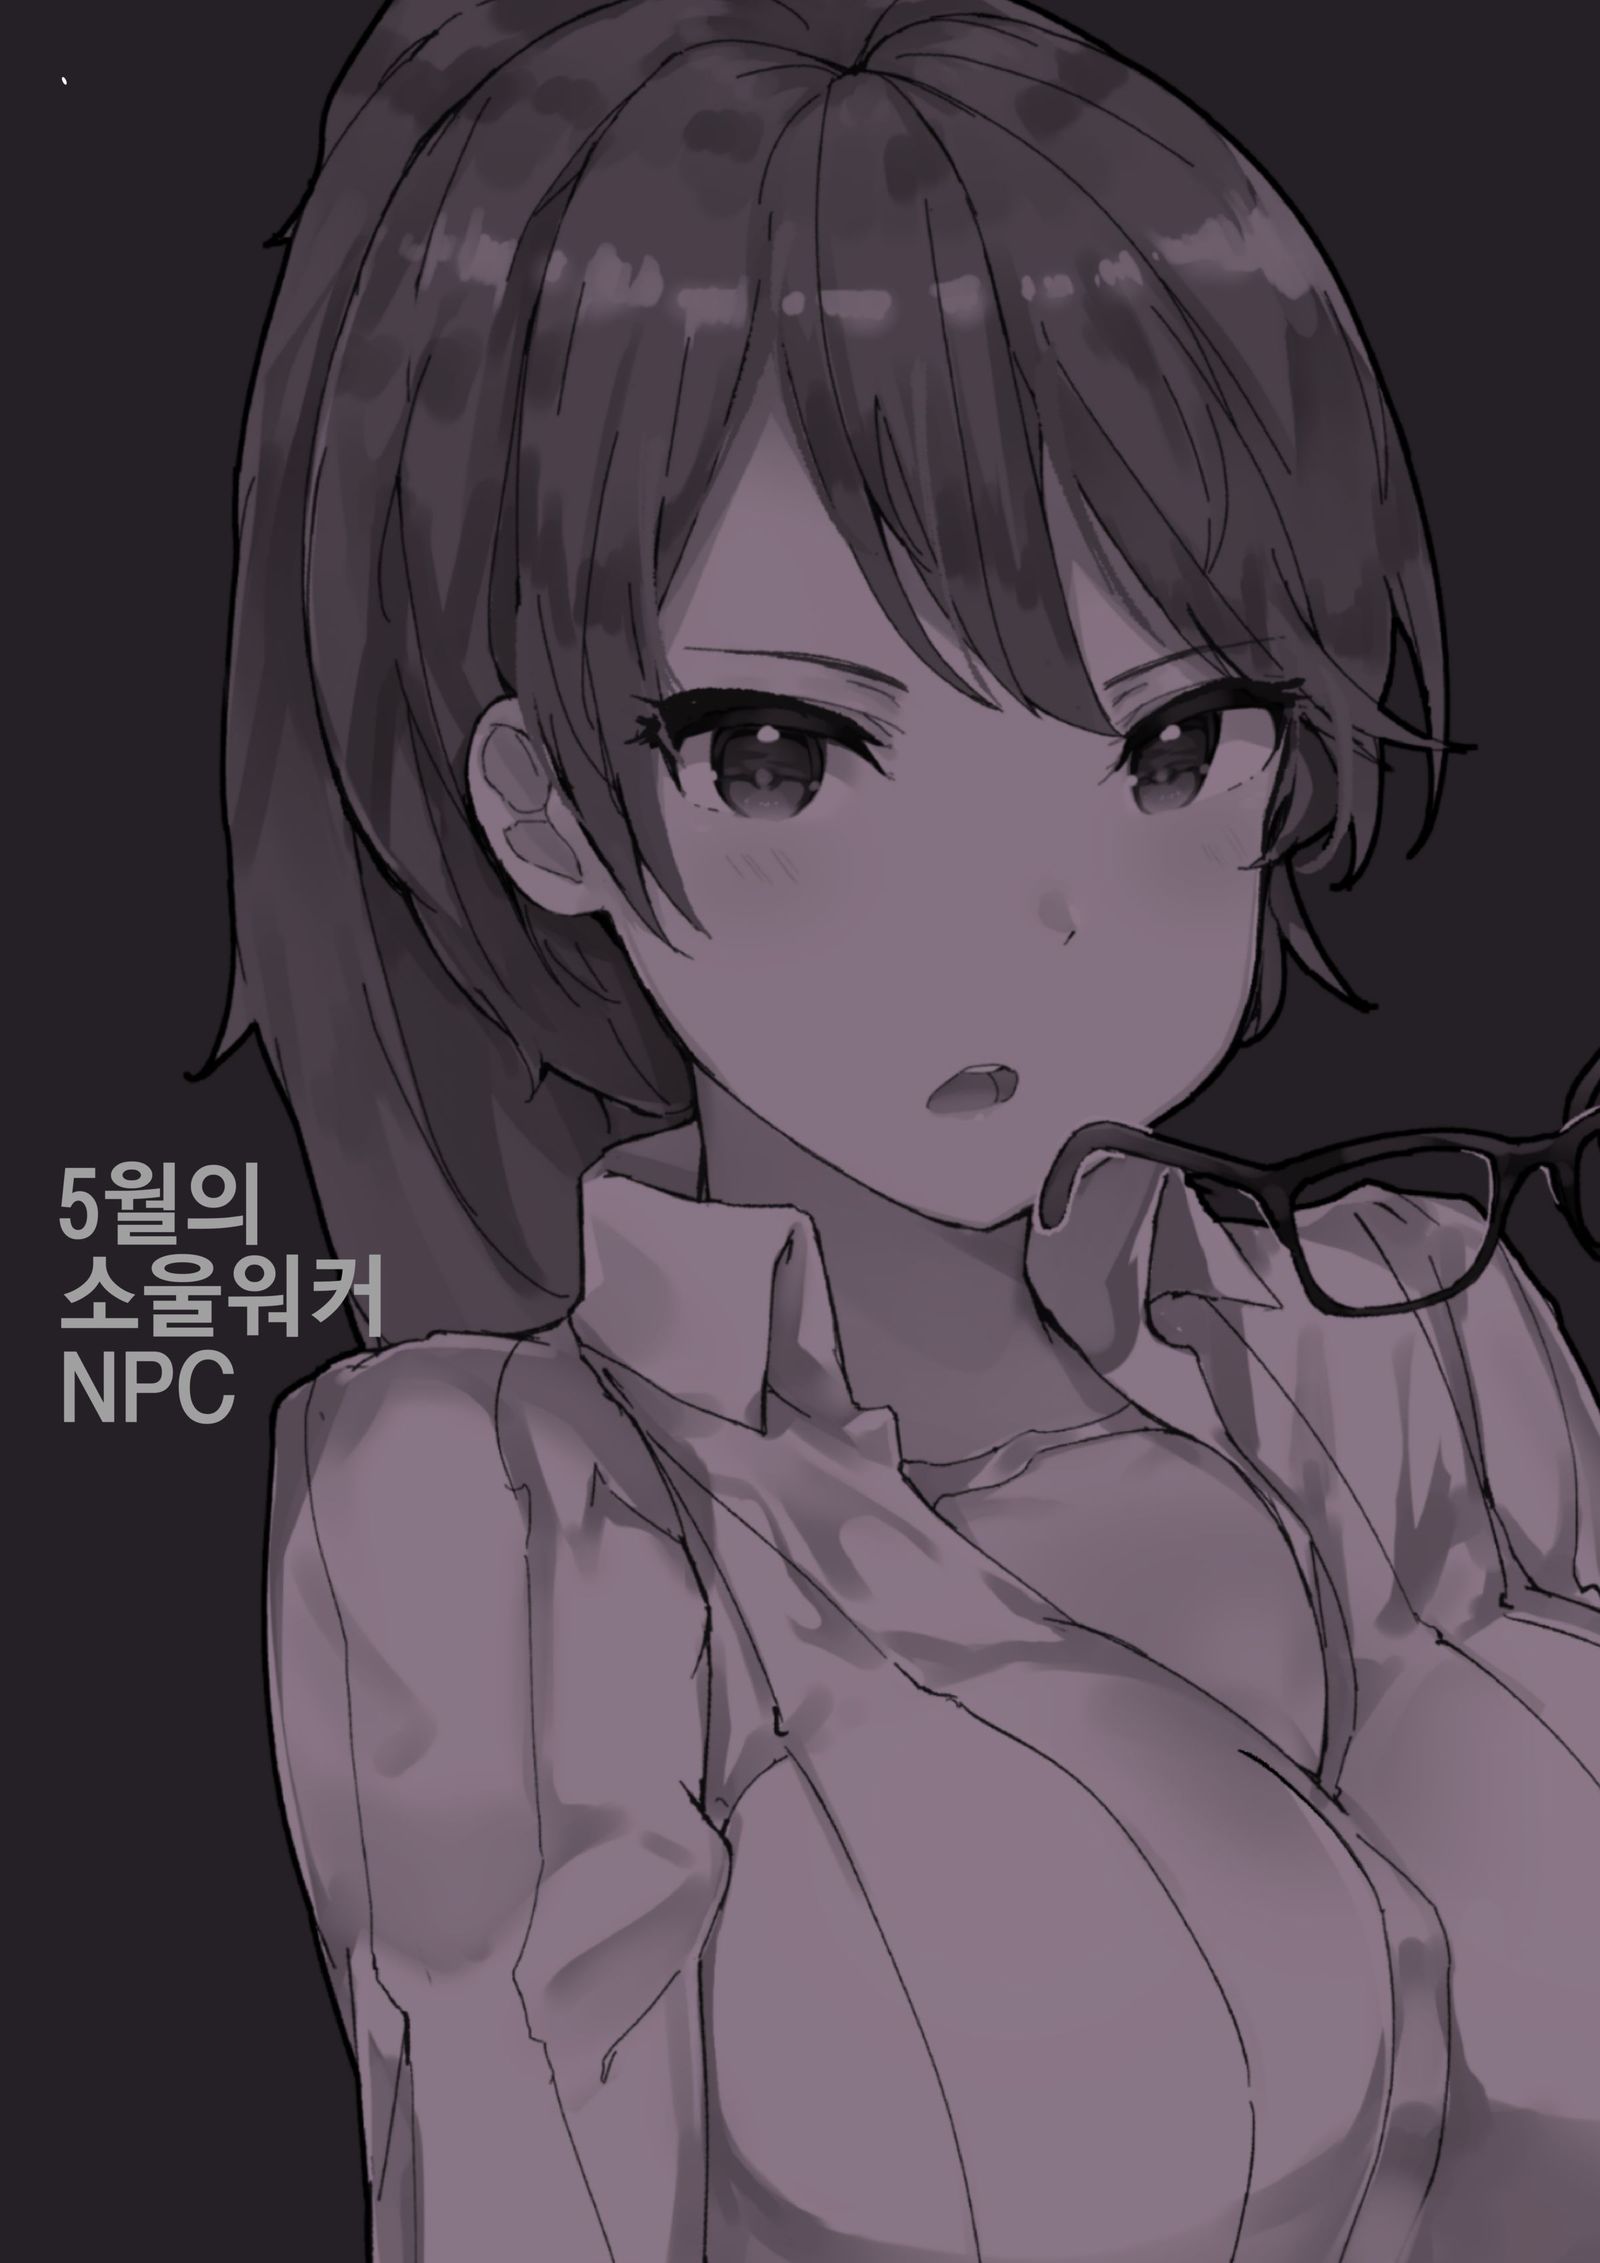 ソウルワーカー〜NPCVer。 1〜